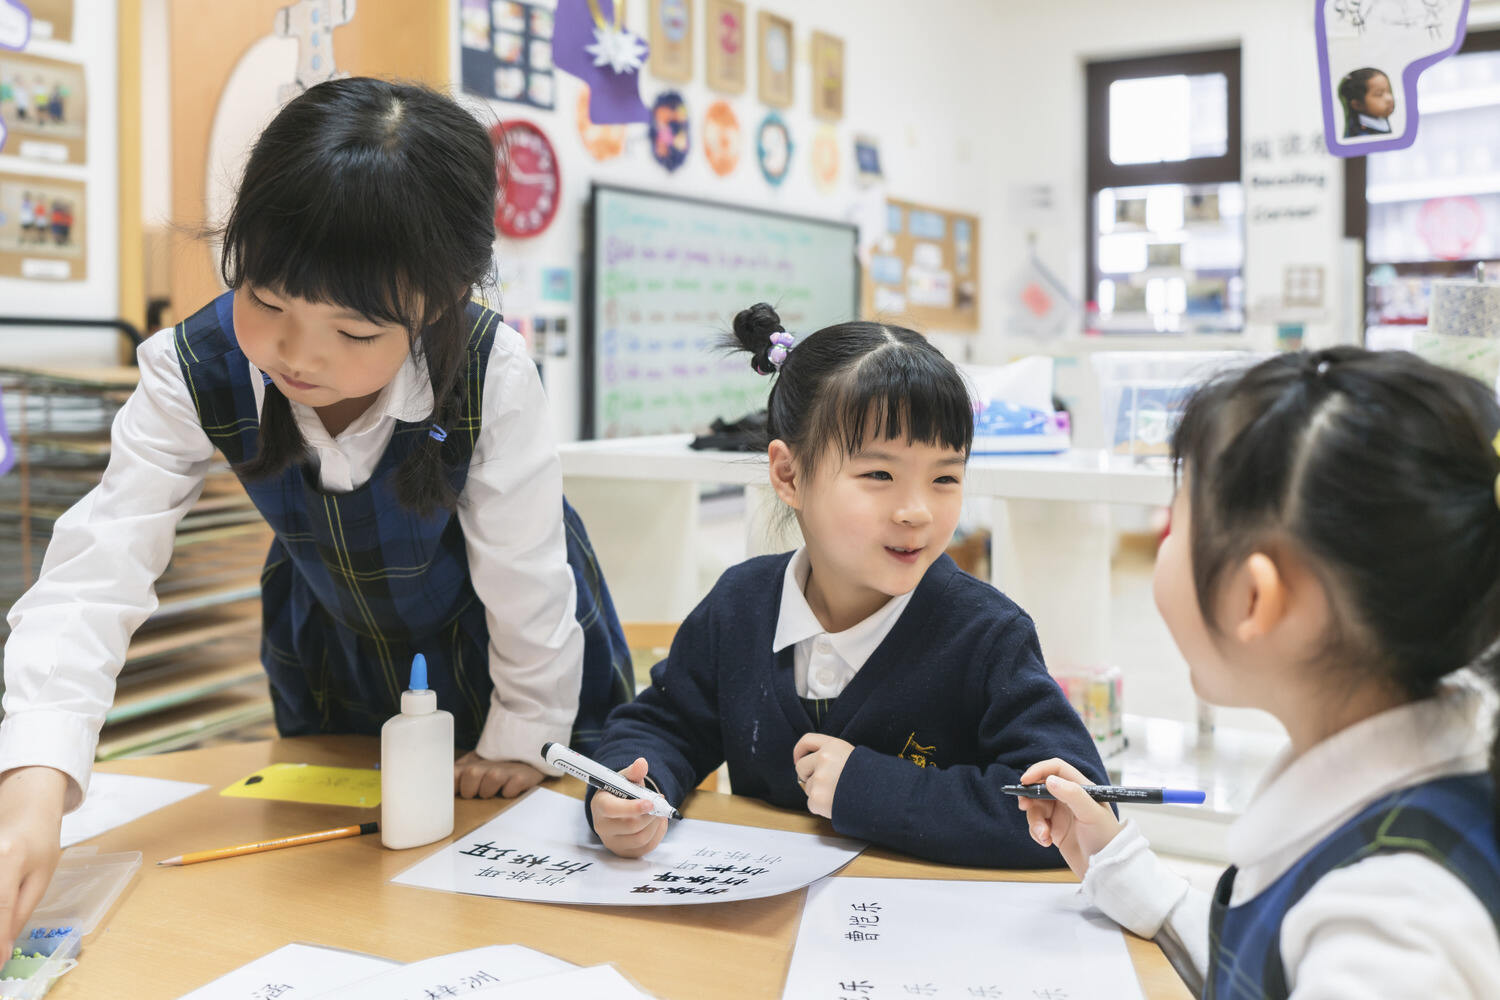 上海惠立幼儿园学前教育课程七大领域